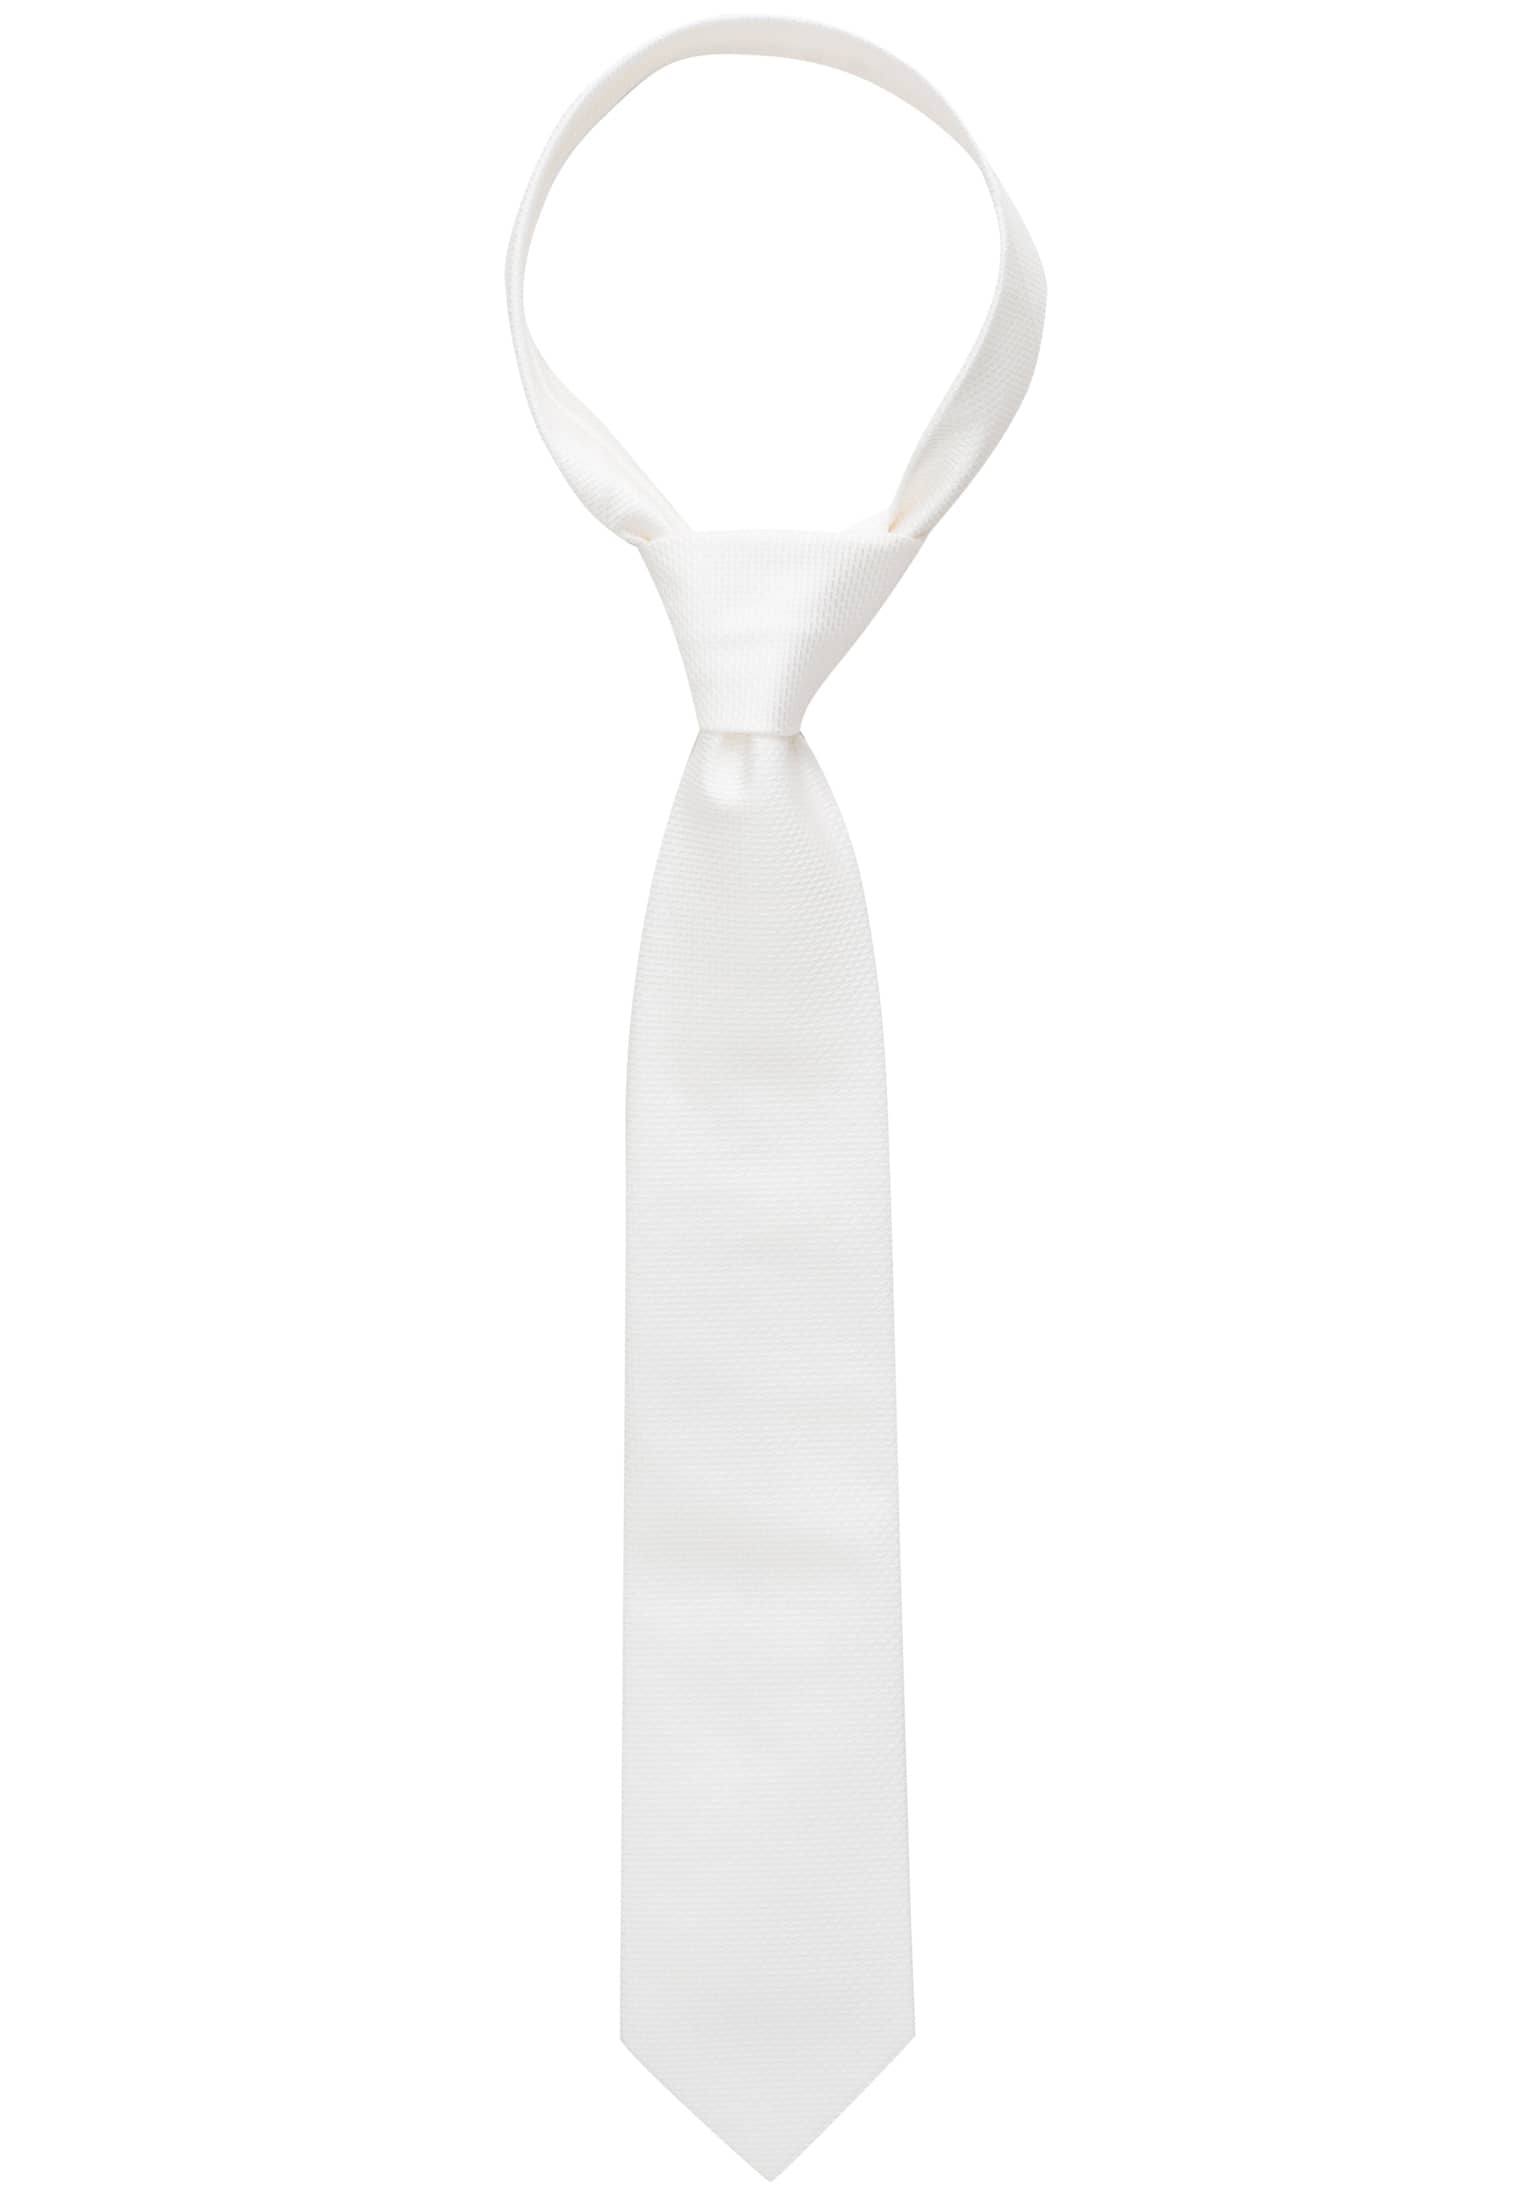 in | weiß strukturiert 1AC01866-00-01-160 | 160 | Krawatte weiß